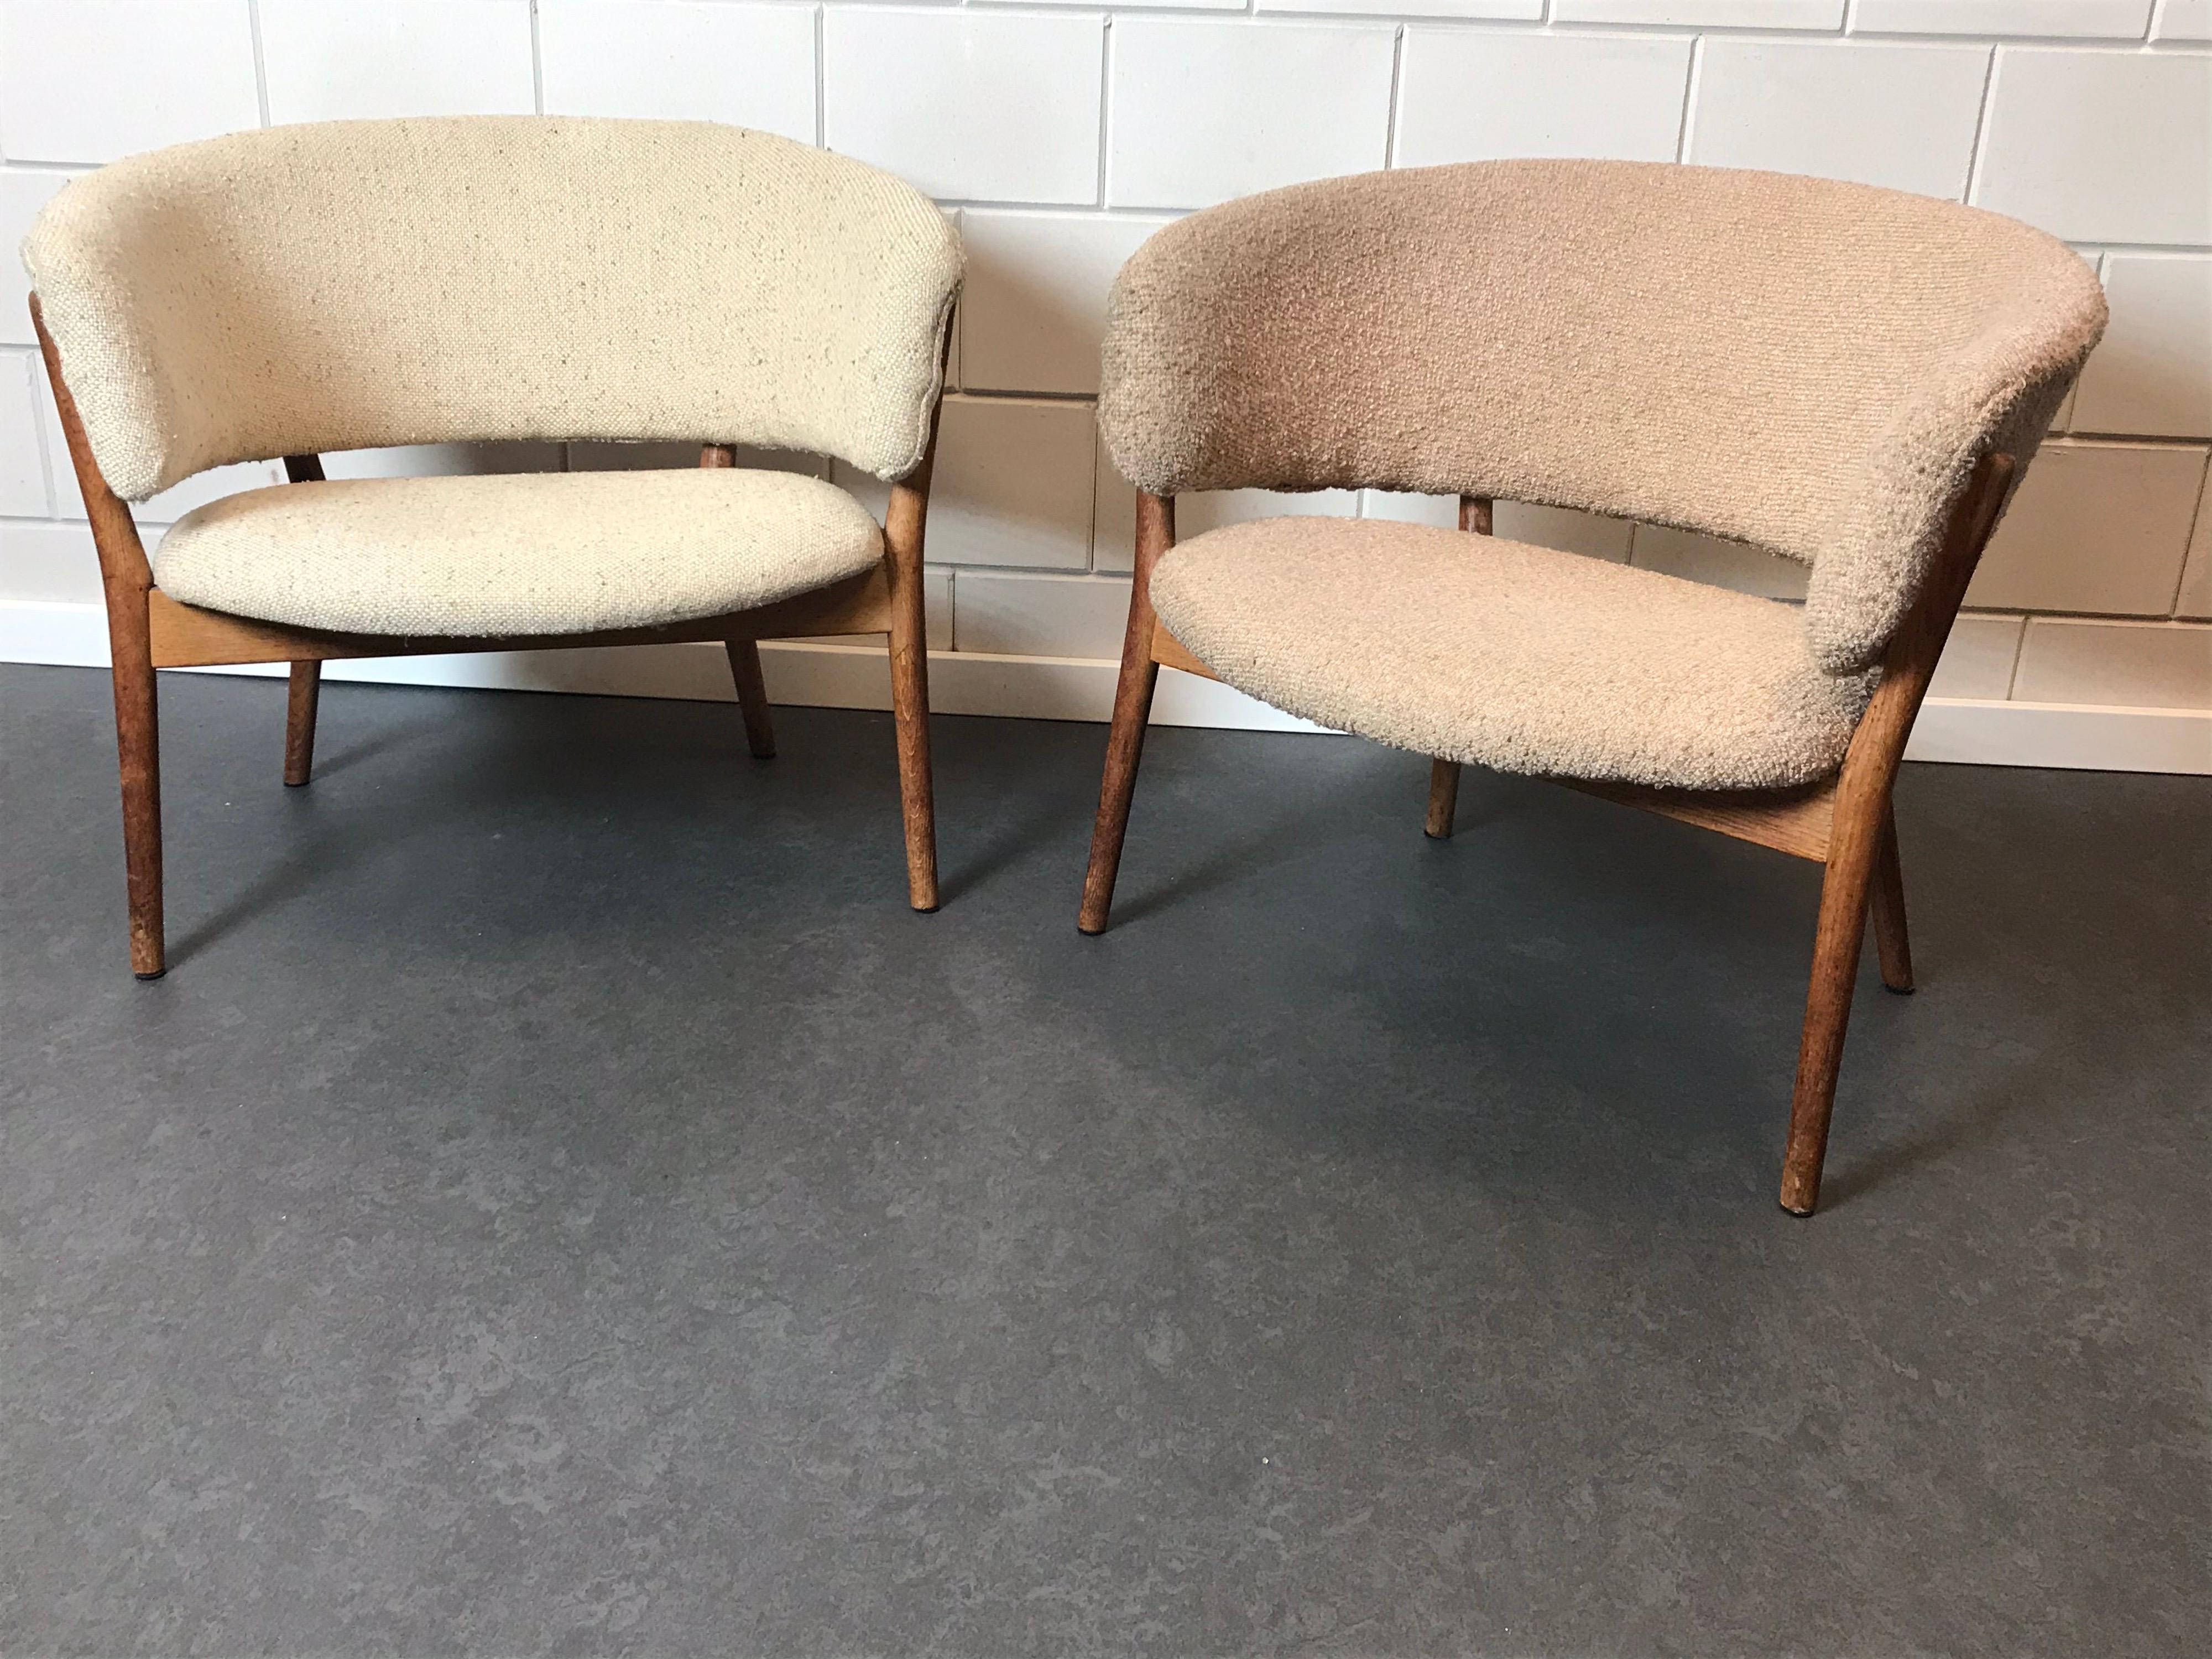 Une paire de chaises longues Nana Ditzel. Nana Ditzel était une designer danoise (1923-2005).
Deux jolis fauteuils scandinaves produits pour Willadsen et conçus en 1952.
Ces chaises de salon modernes sont exécutées en chêne avec un revêtement en